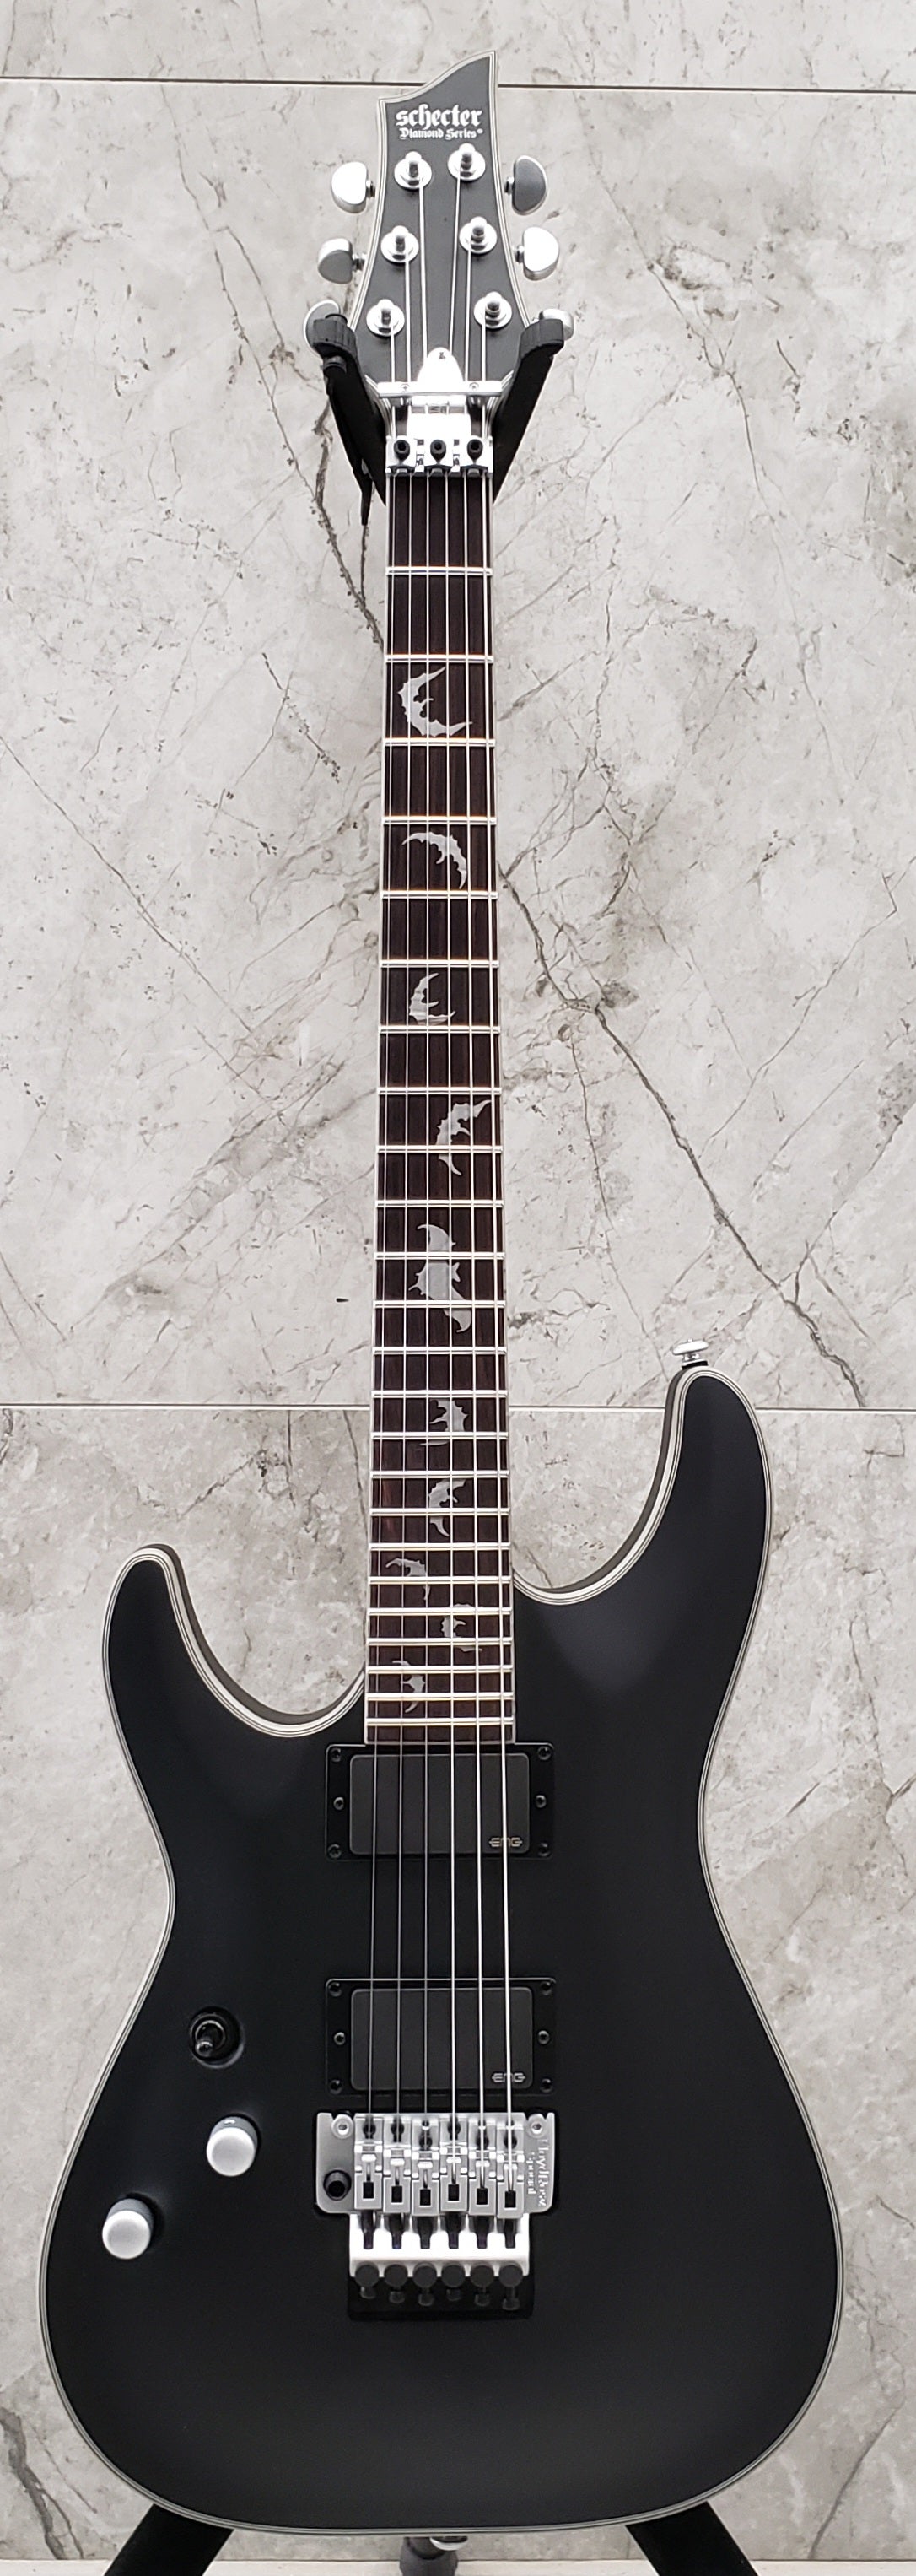 Schecter DAMIEN PLATINUM 6 FR LH SBK LEFT HANDED Satin Black Guitar with EMG 81, 85 Pickups 1184-SHC